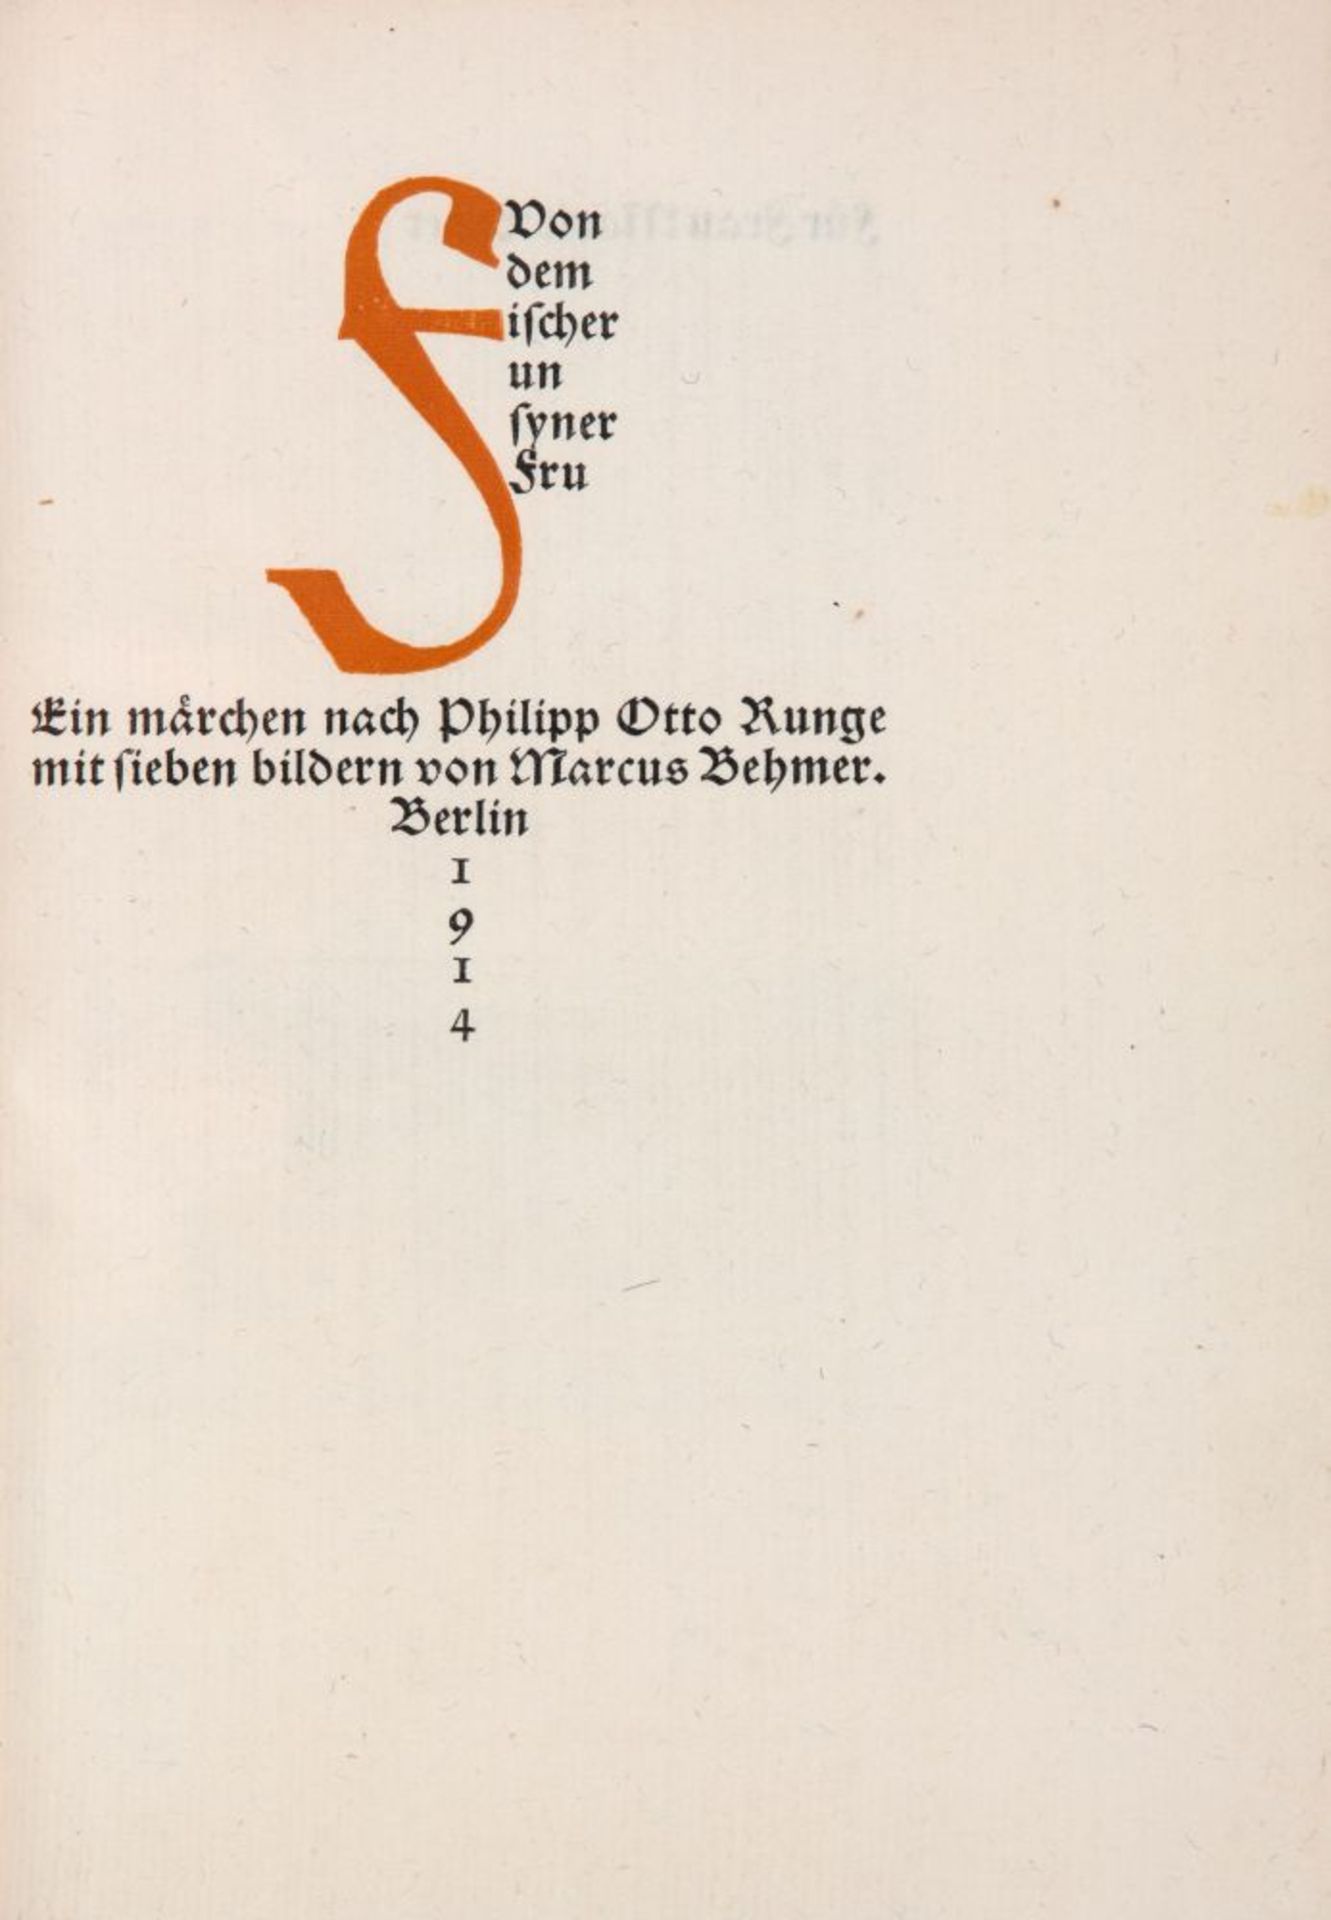 P. O. Runge / M. Behmer, Von dem Fischer un syner Fru. Bln 1914. - Ex. 159/180. - Image 2 of 2